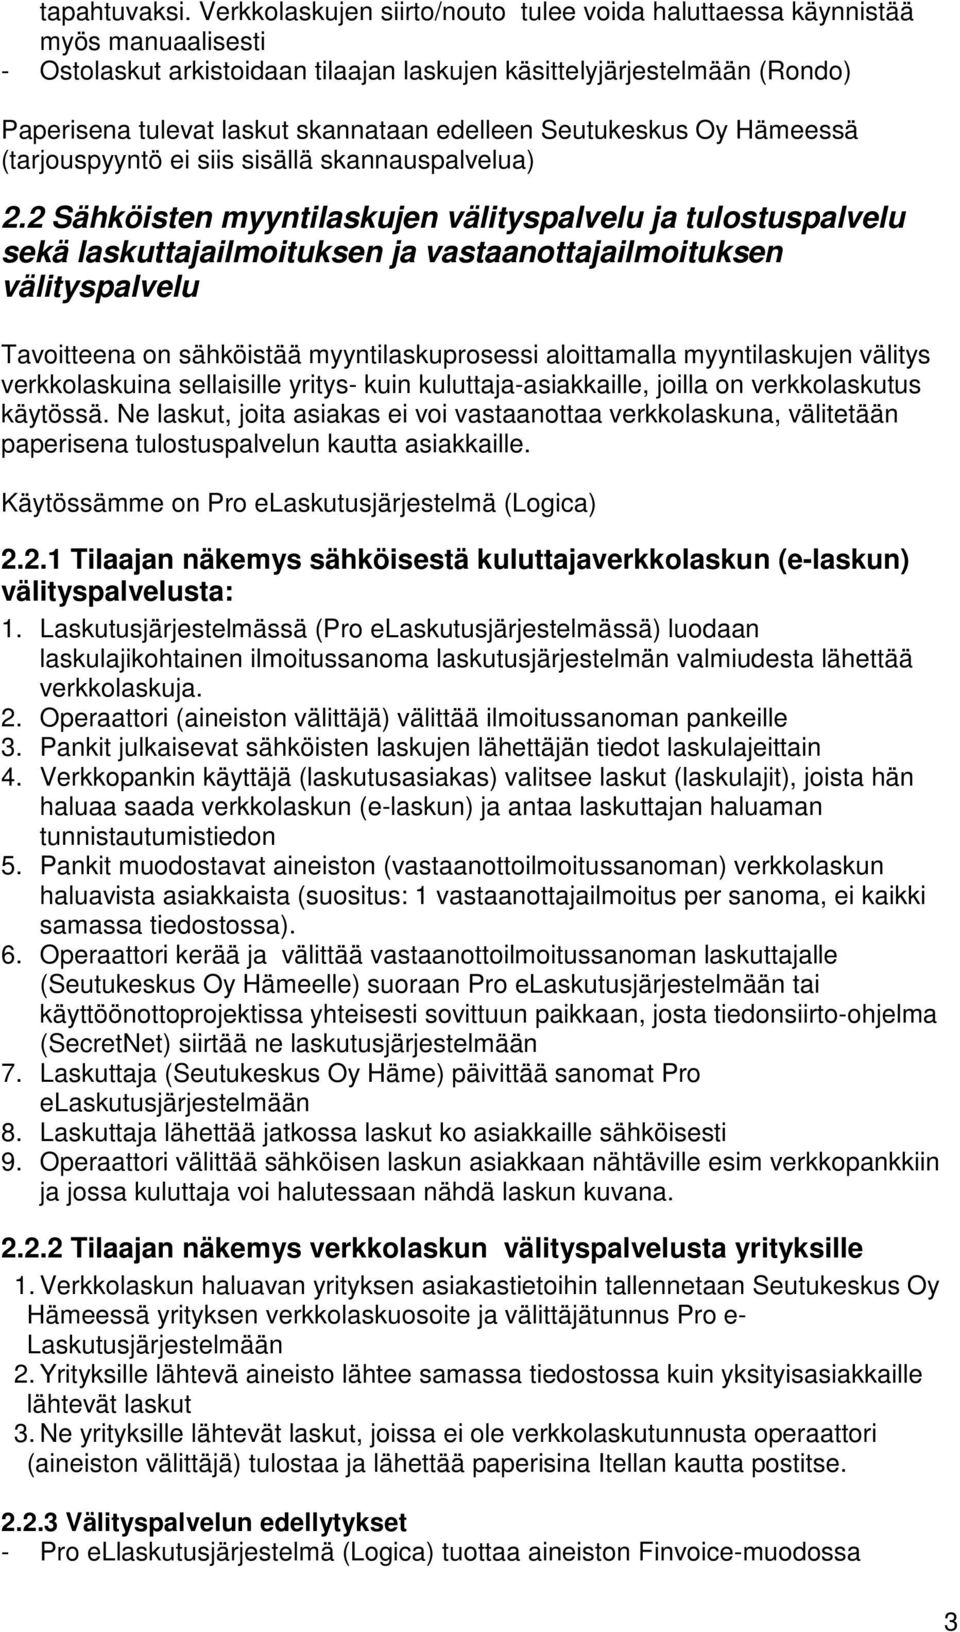 edelleen Seutukeskus Oy Hämeessä (tarjouspyyntö ei siis sisällä skannauspalvelua) 2.